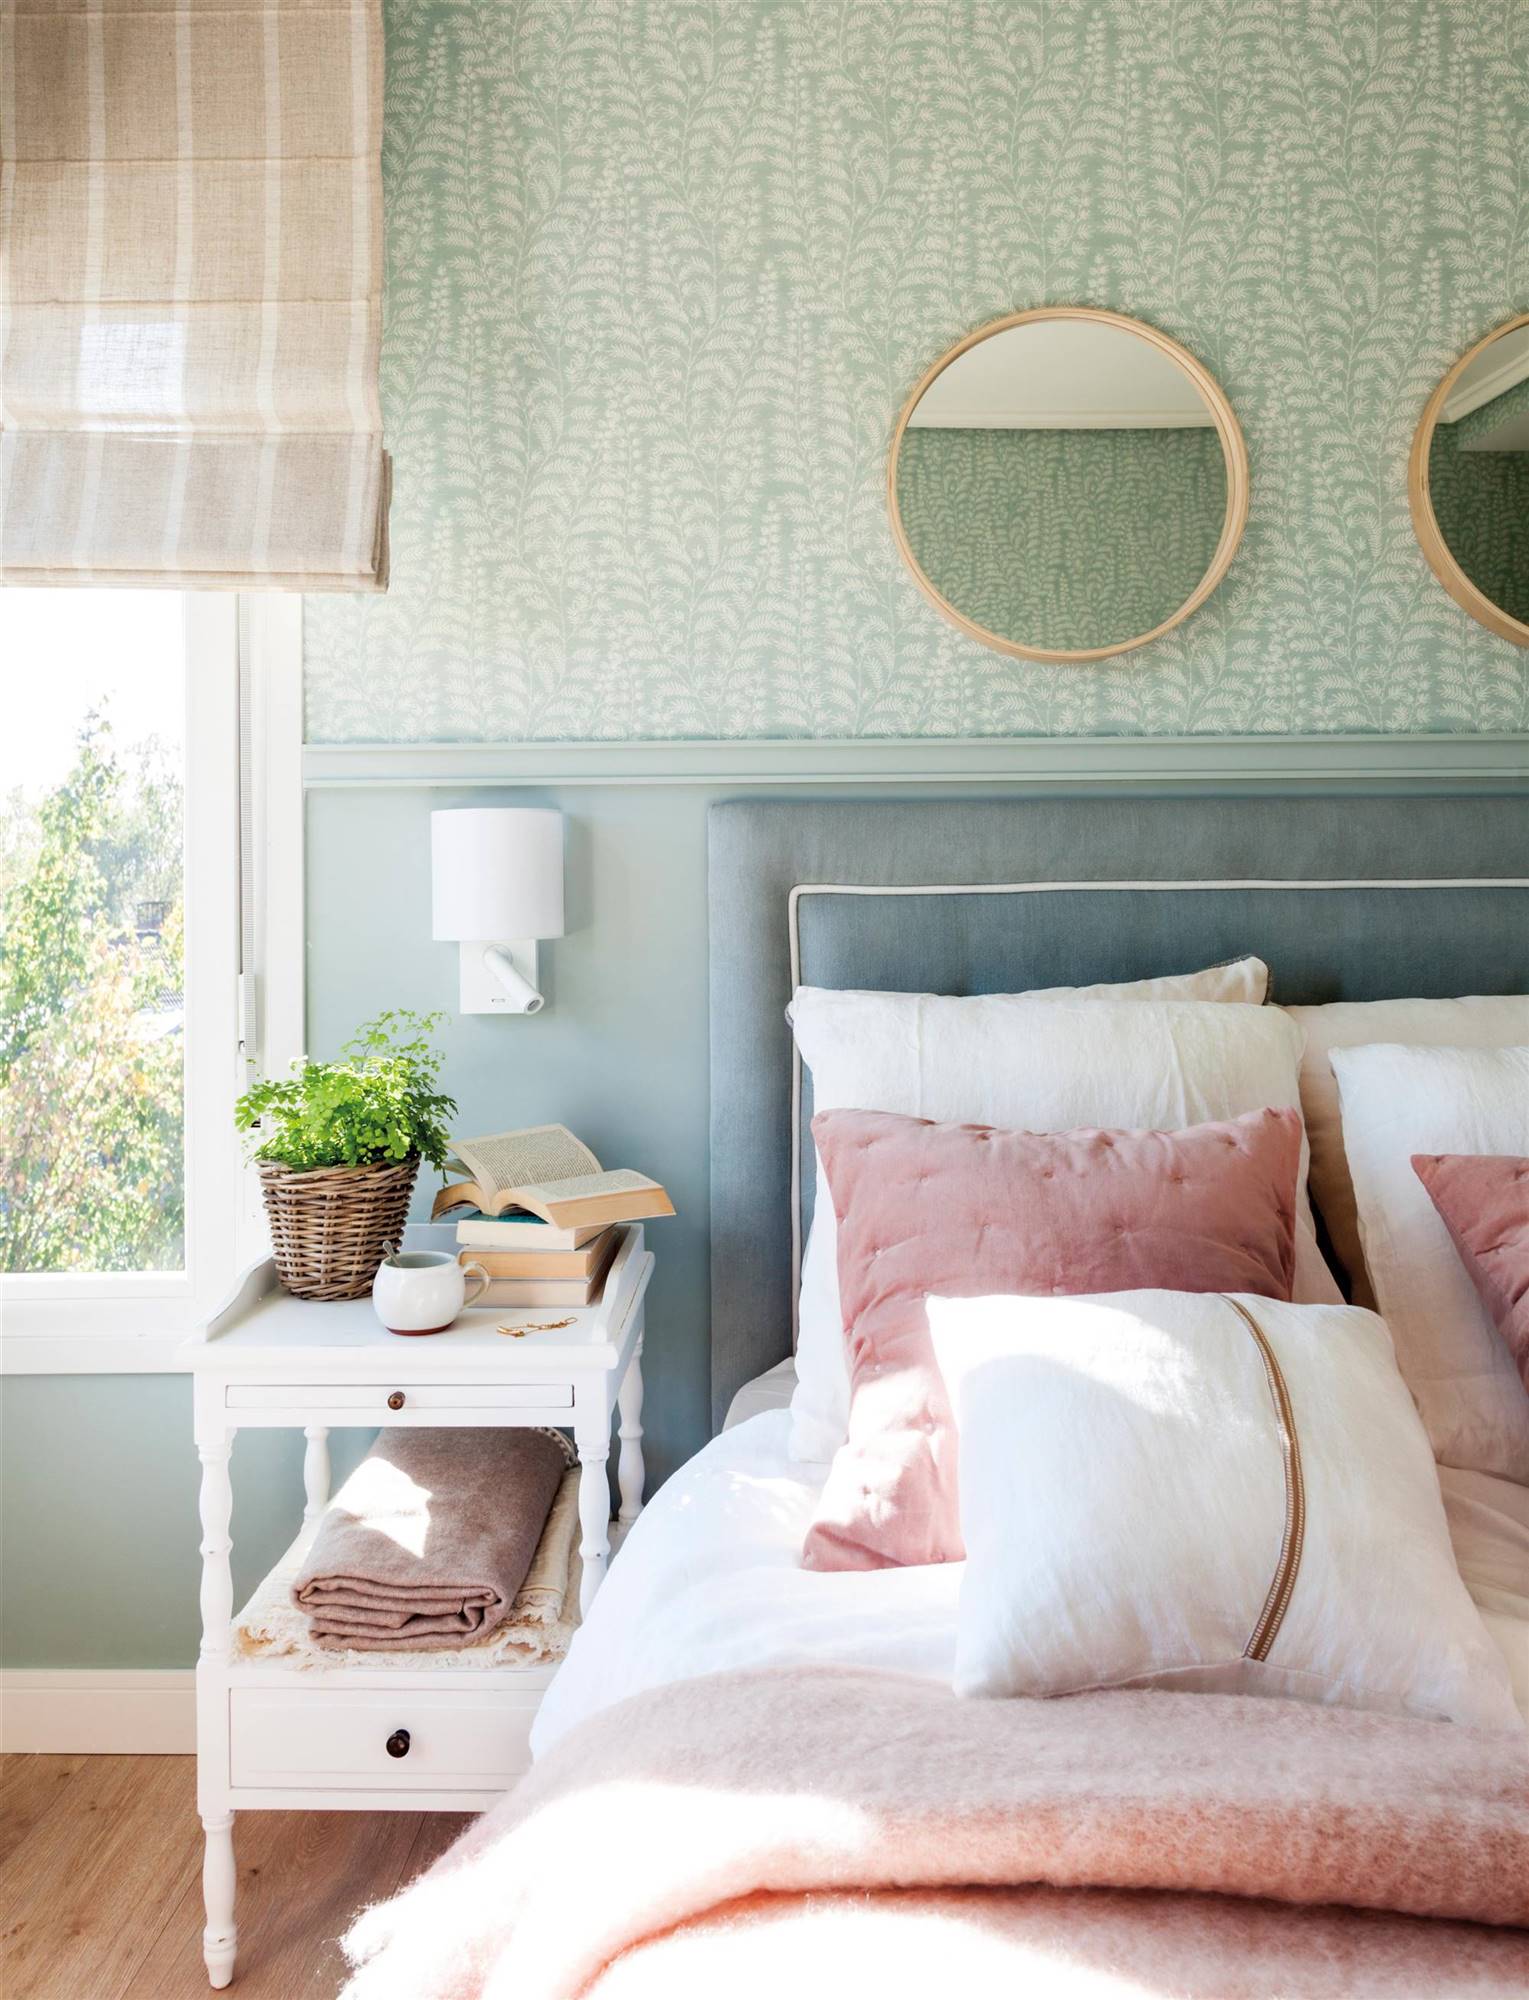 Lección deco: dormitorio con papel pintado y zócalo de madera lacada en la misma gama de color